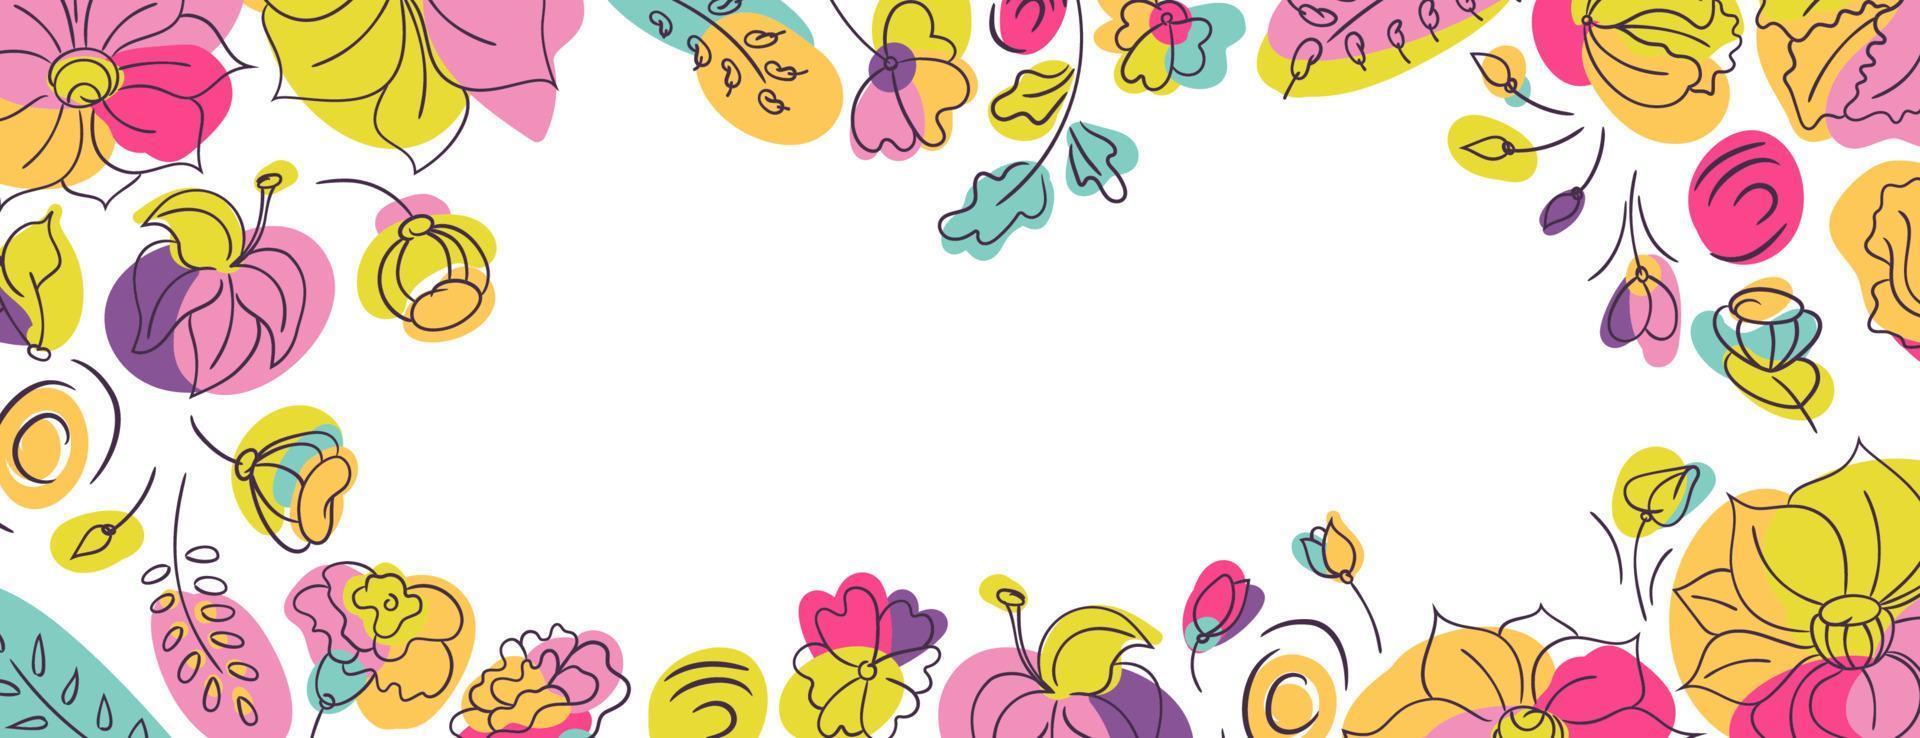 fundo de página da web de capa floral com flores silvestres de verão. canteiro de flores com cores neon brilhantes. fundo branco vetor